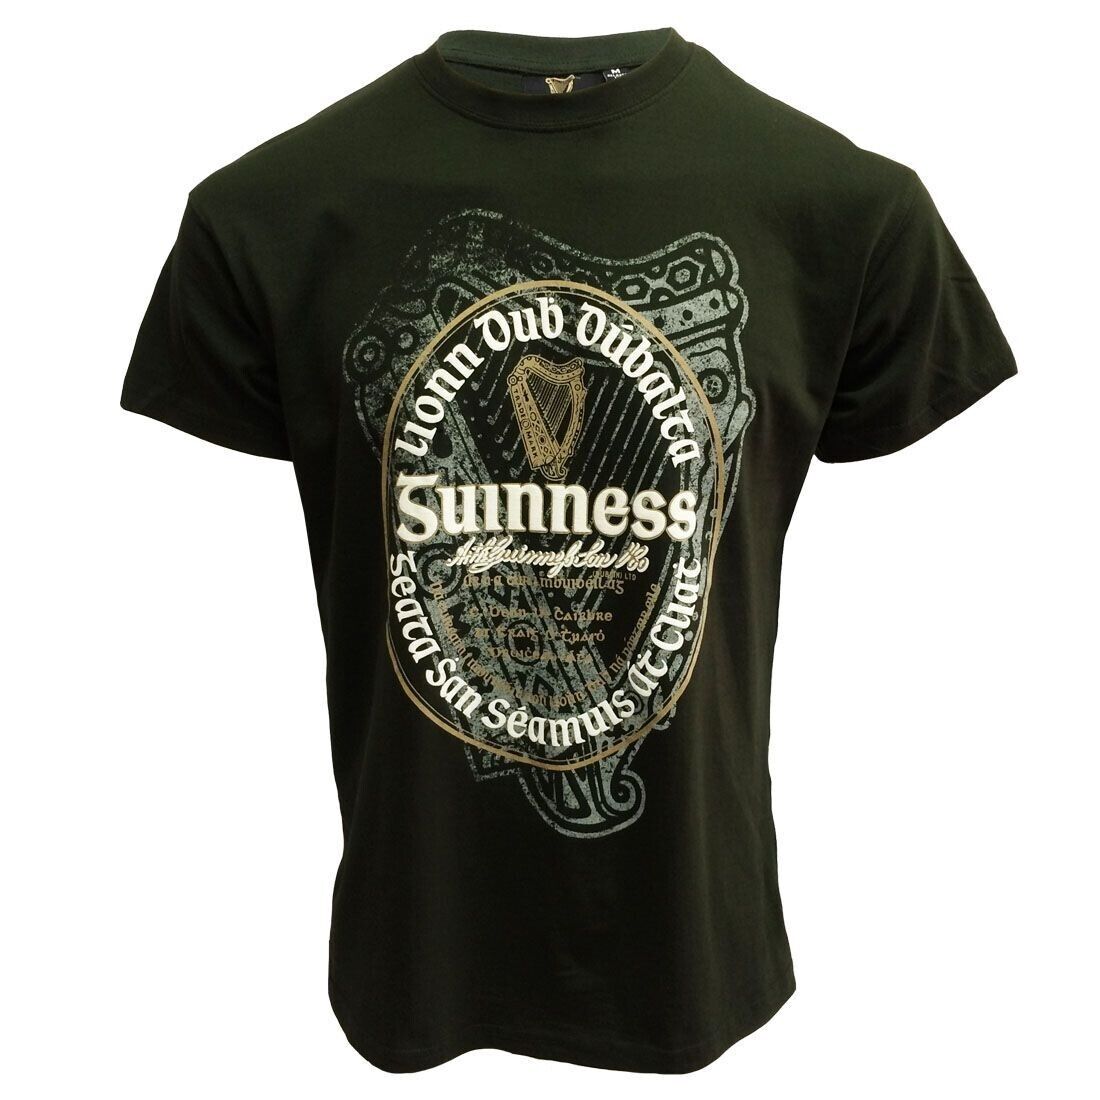 Guinness Bottle Green Irish Label, size Med